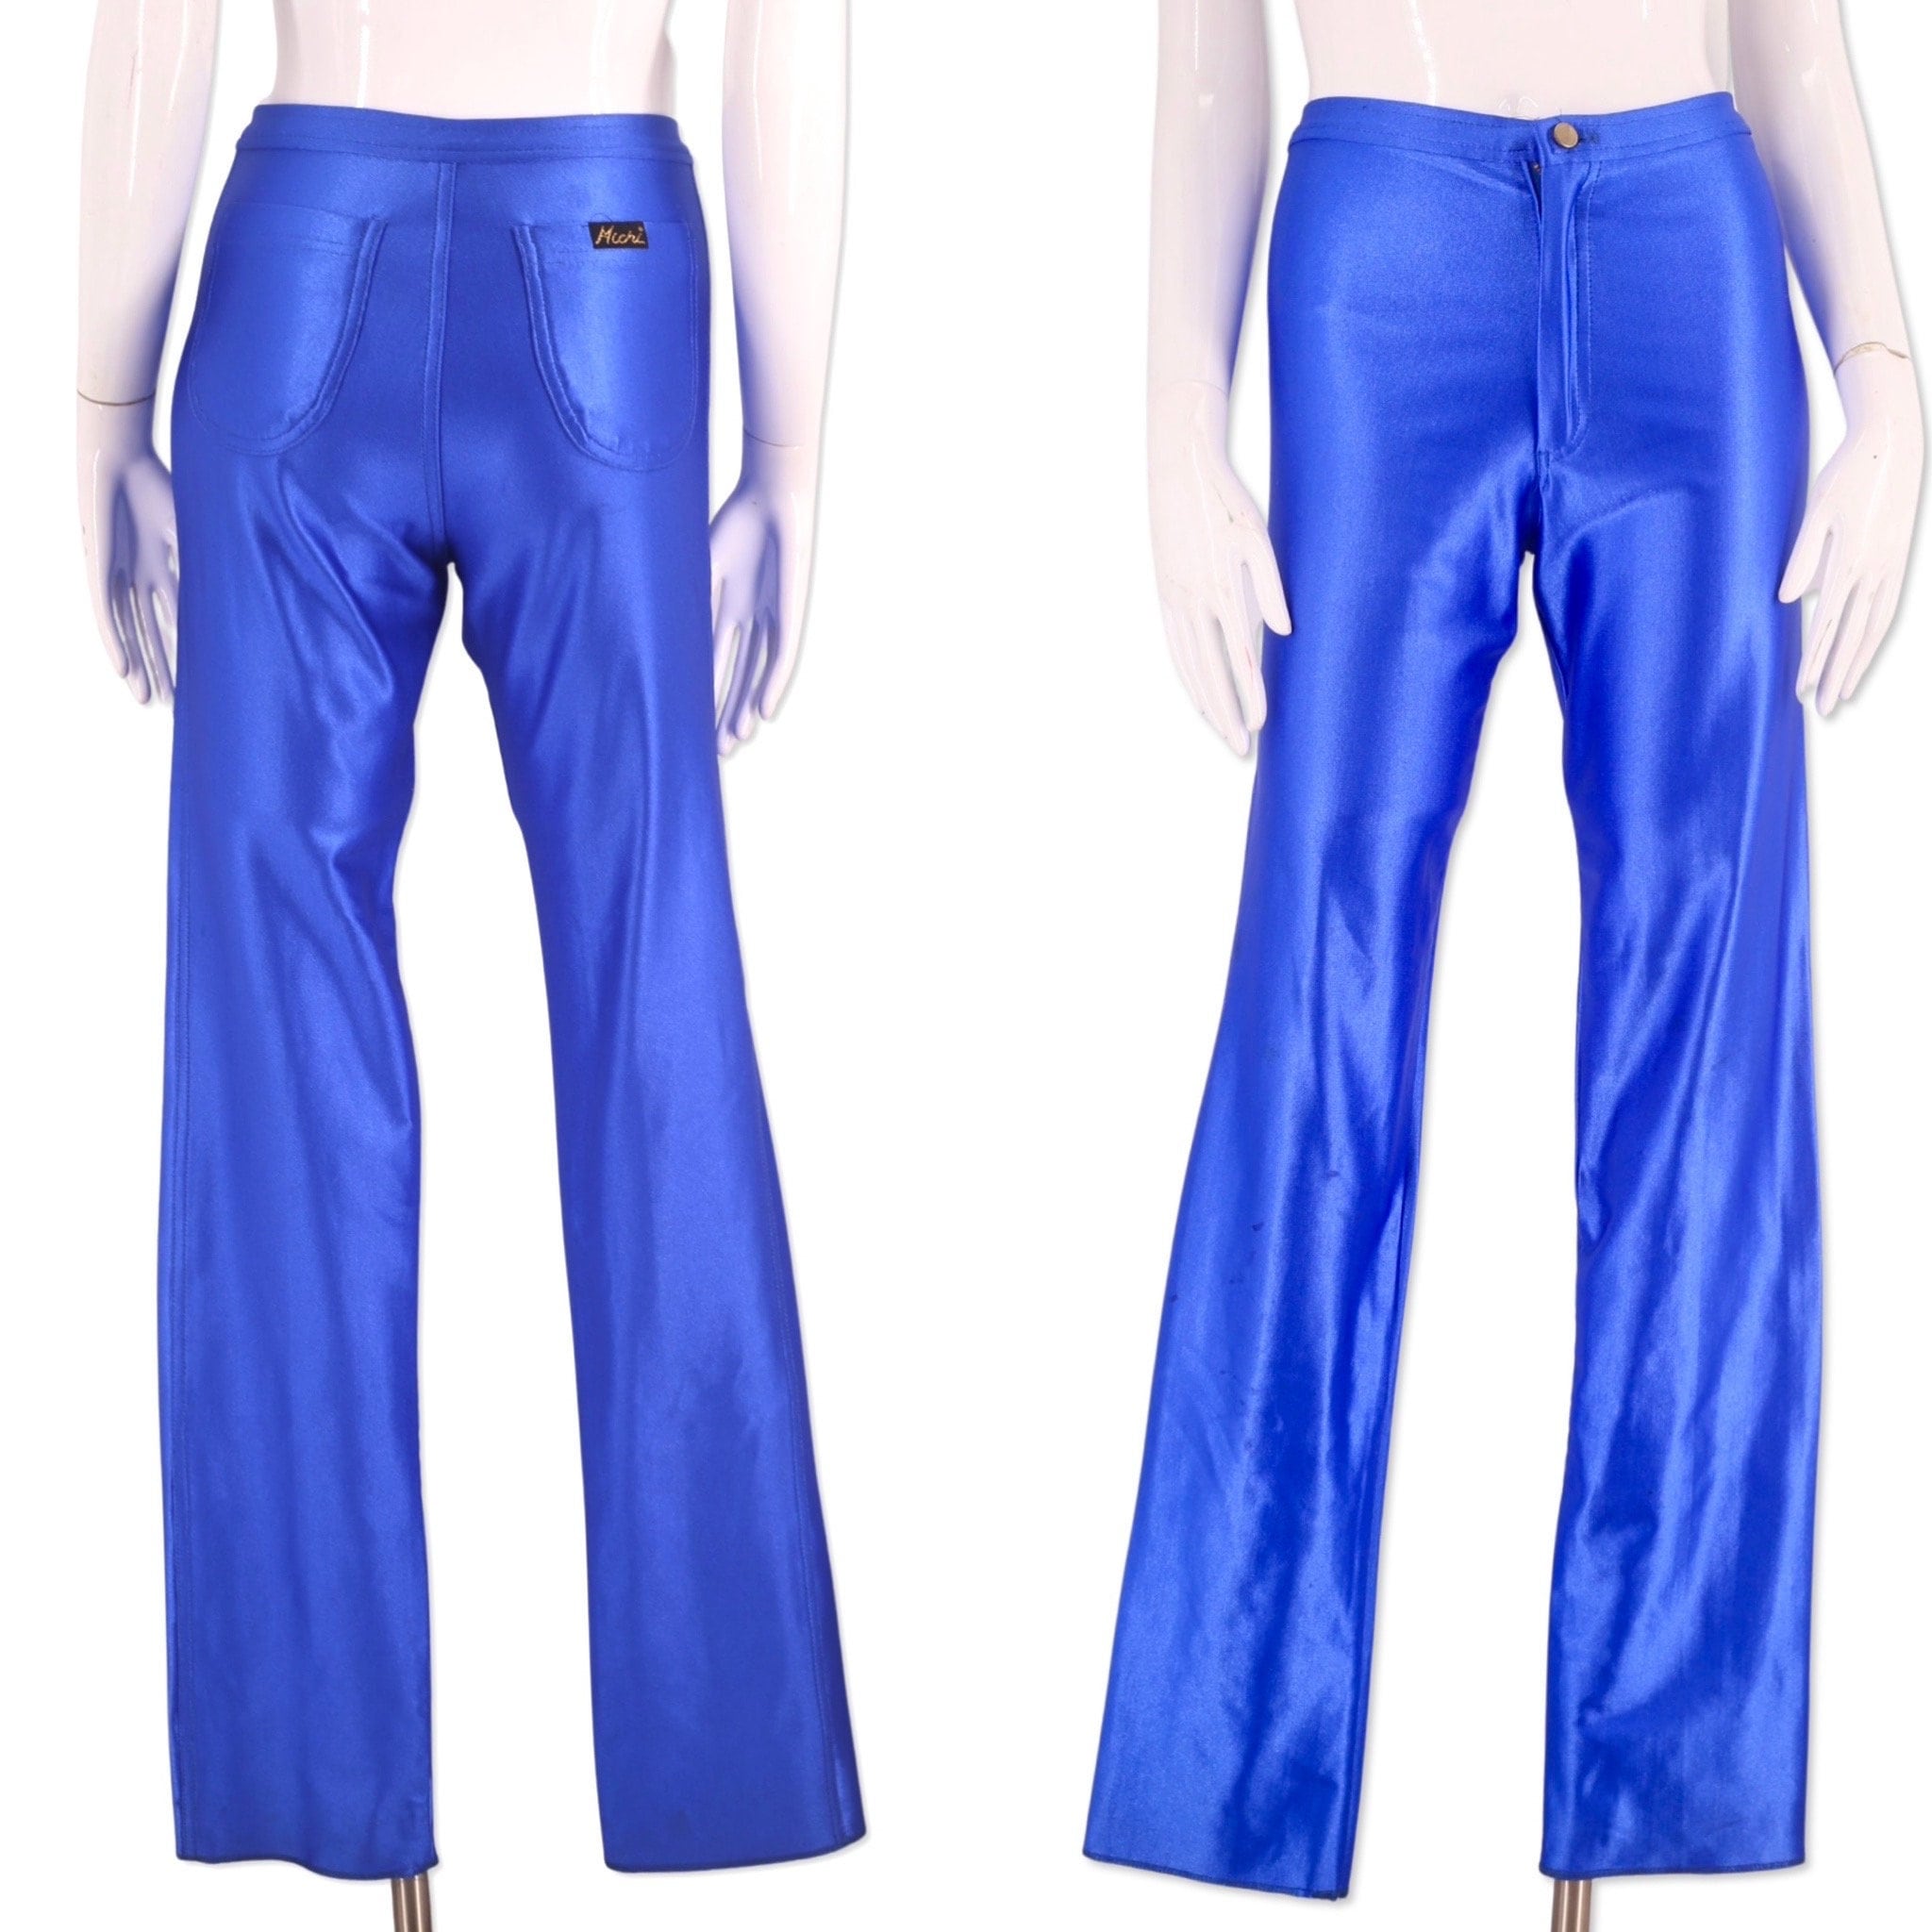 ULTIMATE DISCO DIVA vintage 80s ELECTRIC BLUE Skinny SPANDEX Pants Leggings  skin tight glam L.